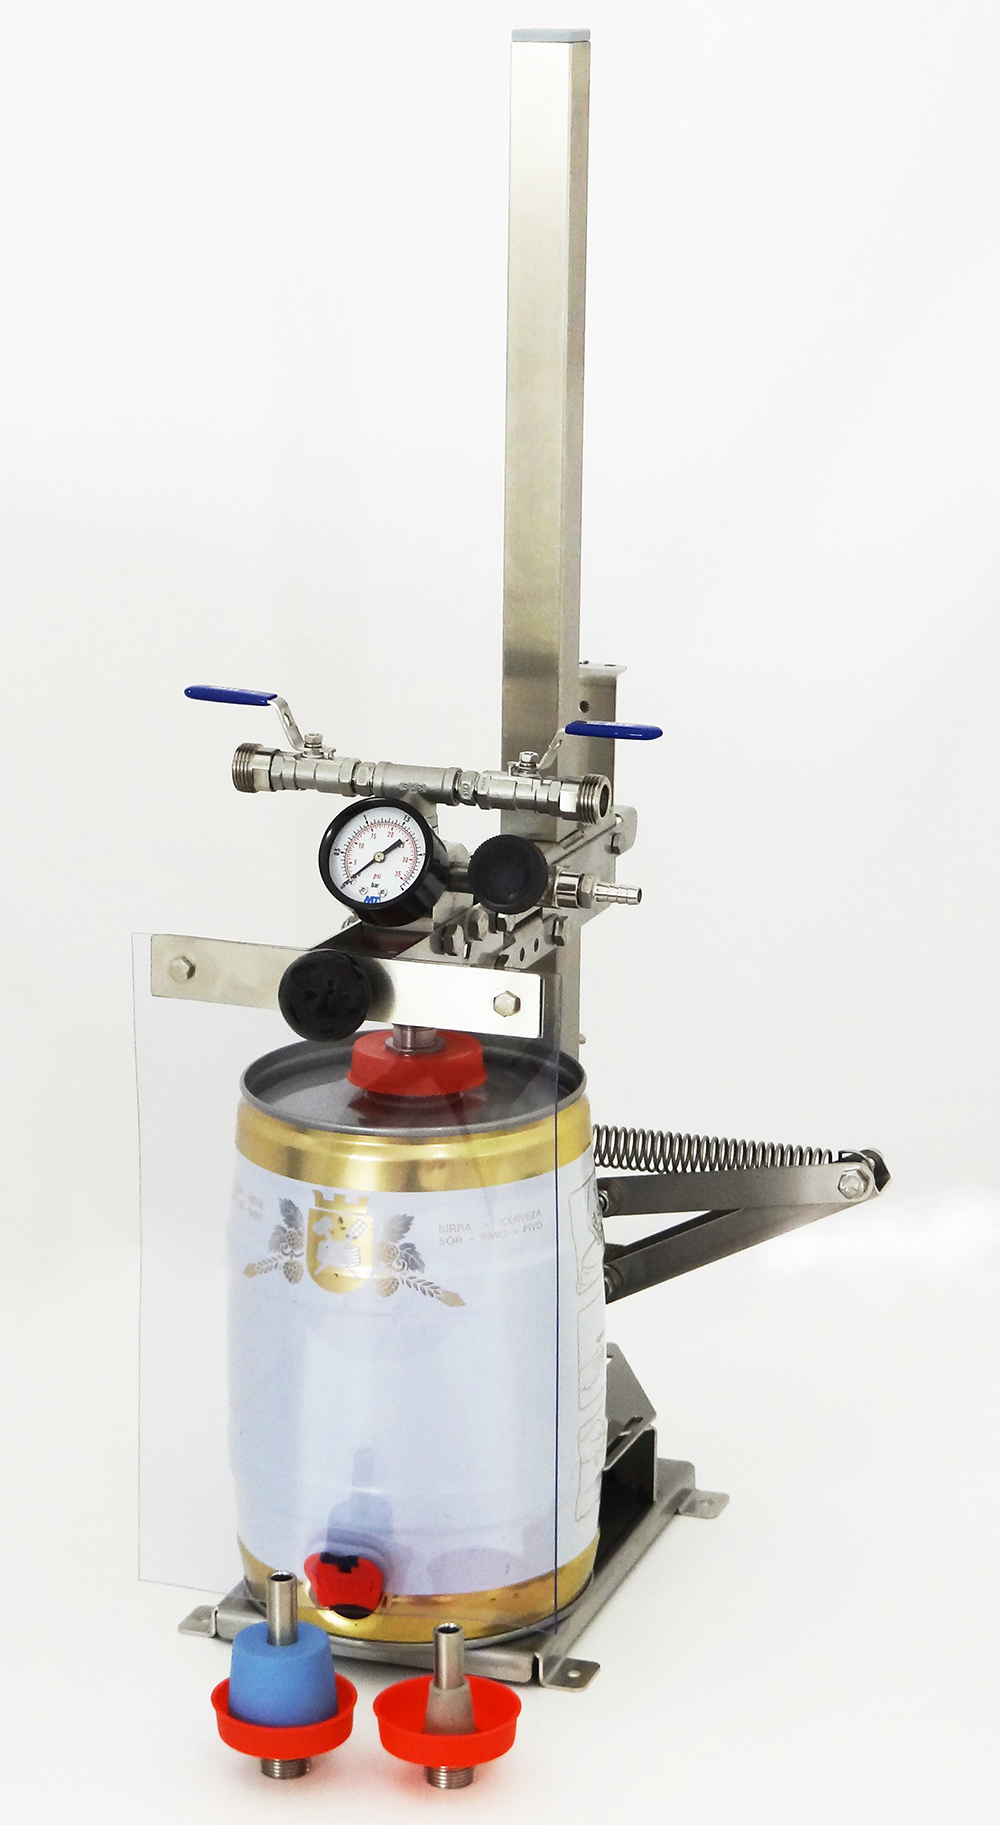  Gegendruck Flaschenfüller Edelstahl Bierflasche Füllstoff 3 Way  CO2 Tools Kit für Bierpistole Abfüllanlage